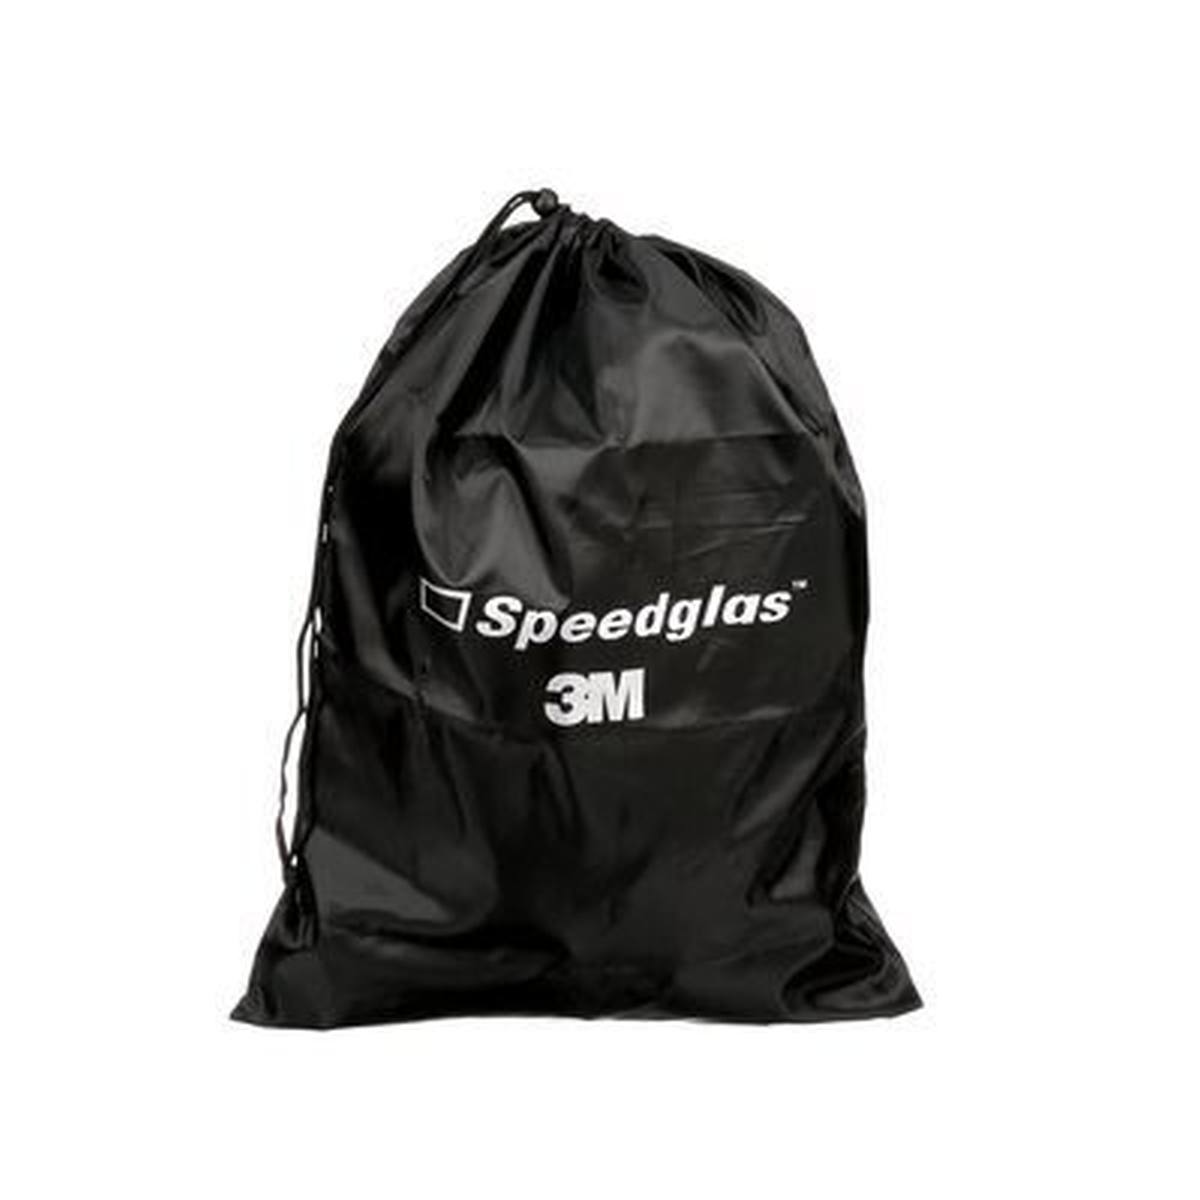 3M Speedglas Storage bag #837000